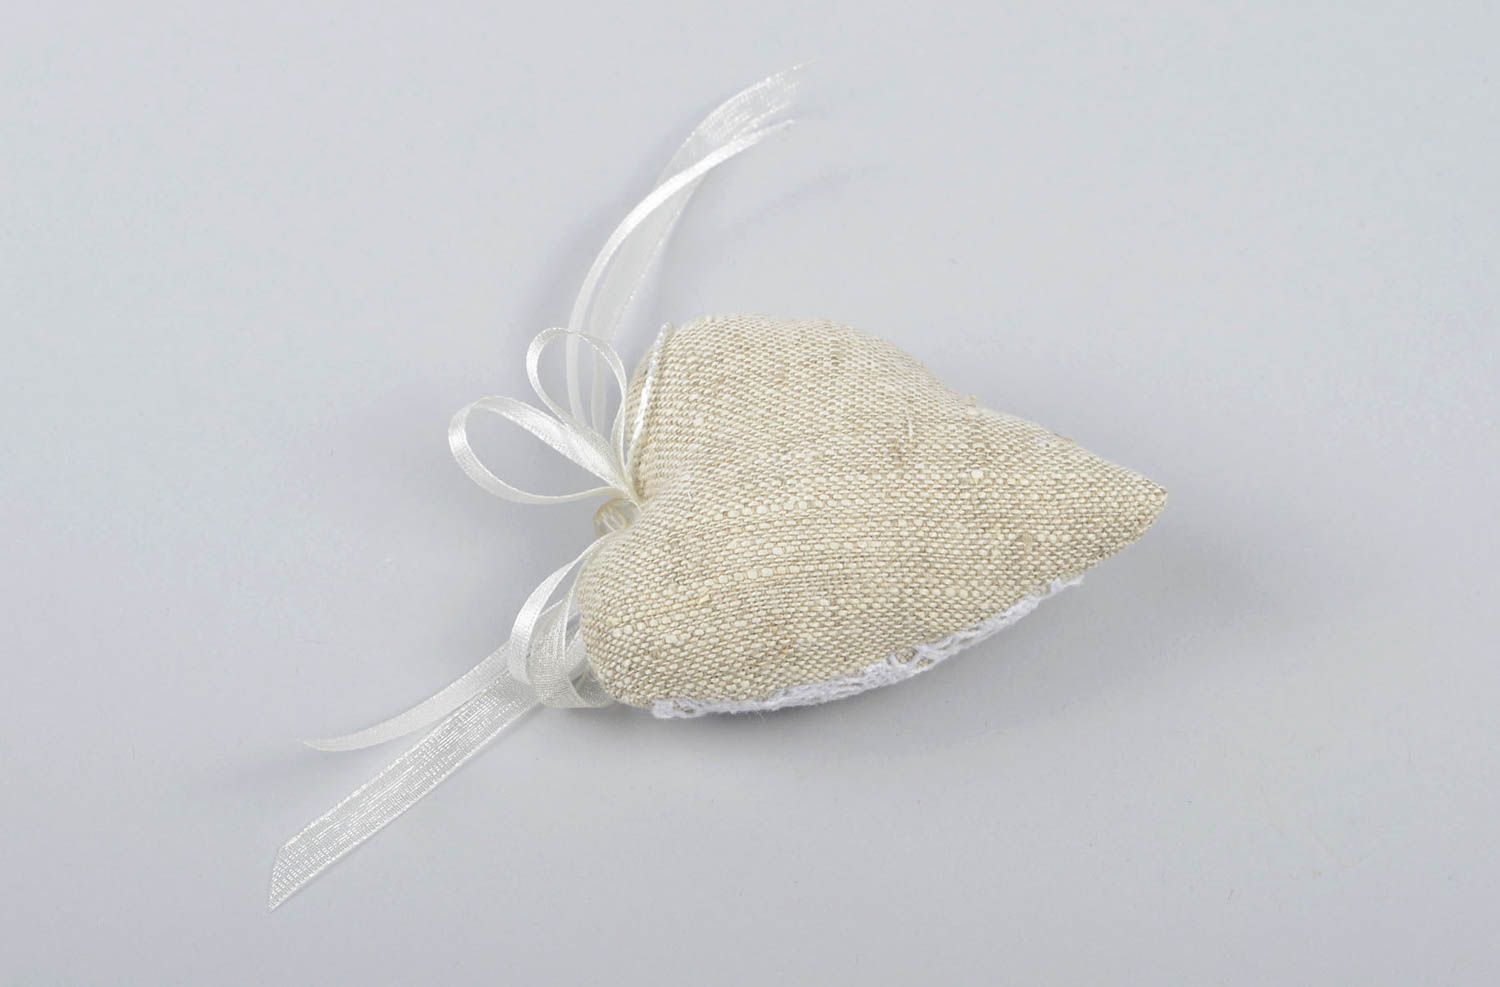 Plüsch Herz handmade Deko aus Naturmaterialien originell romantische Geschenke foto 7